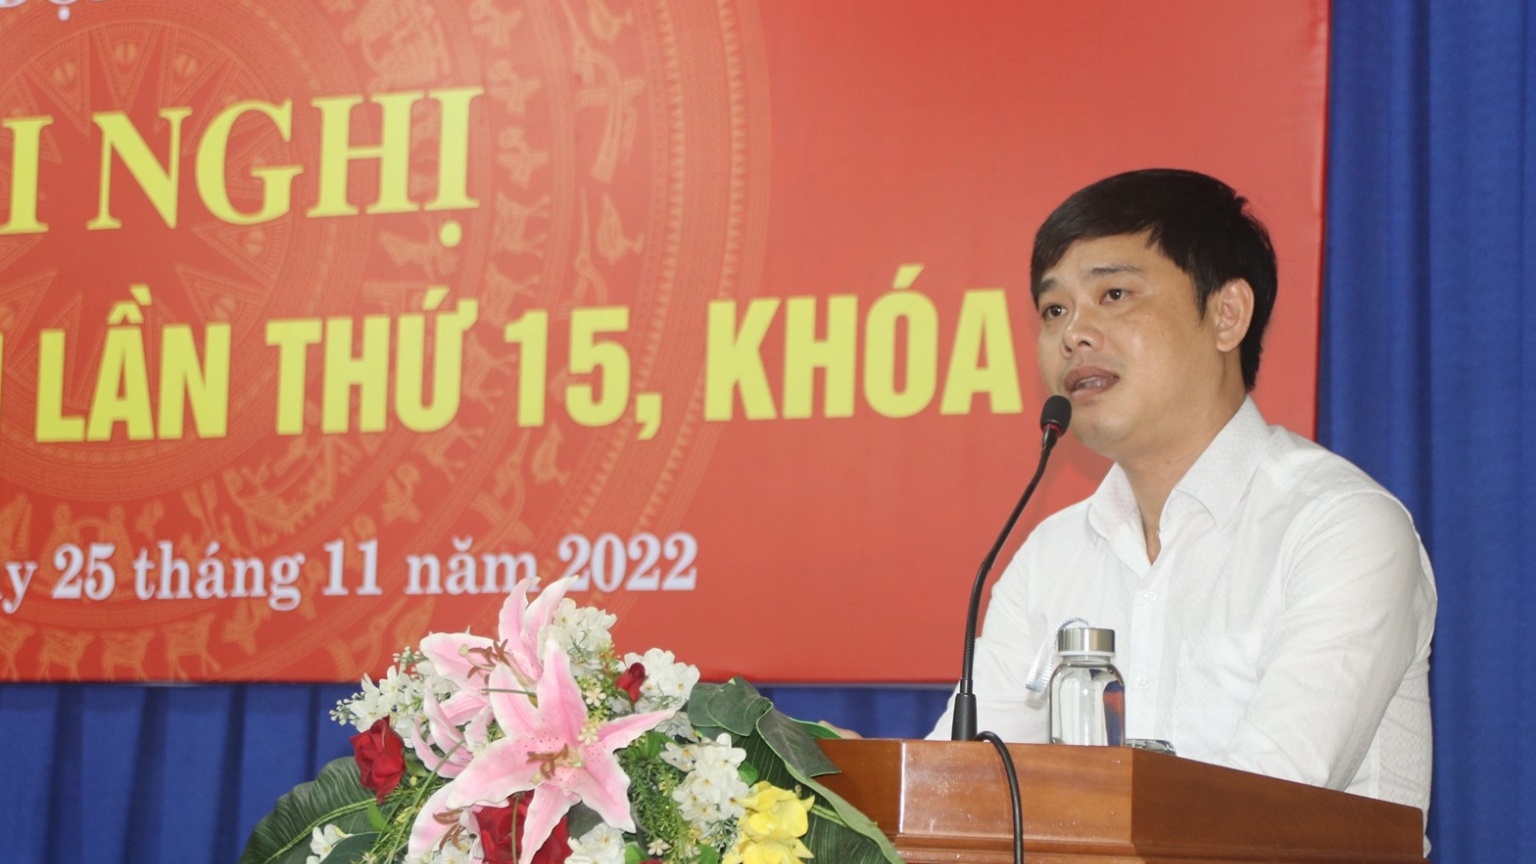 Đồng chí Bùi Hoài Nam được bầu làm Chủ tịch LĐLĐ tỉnh Khánh Hòa